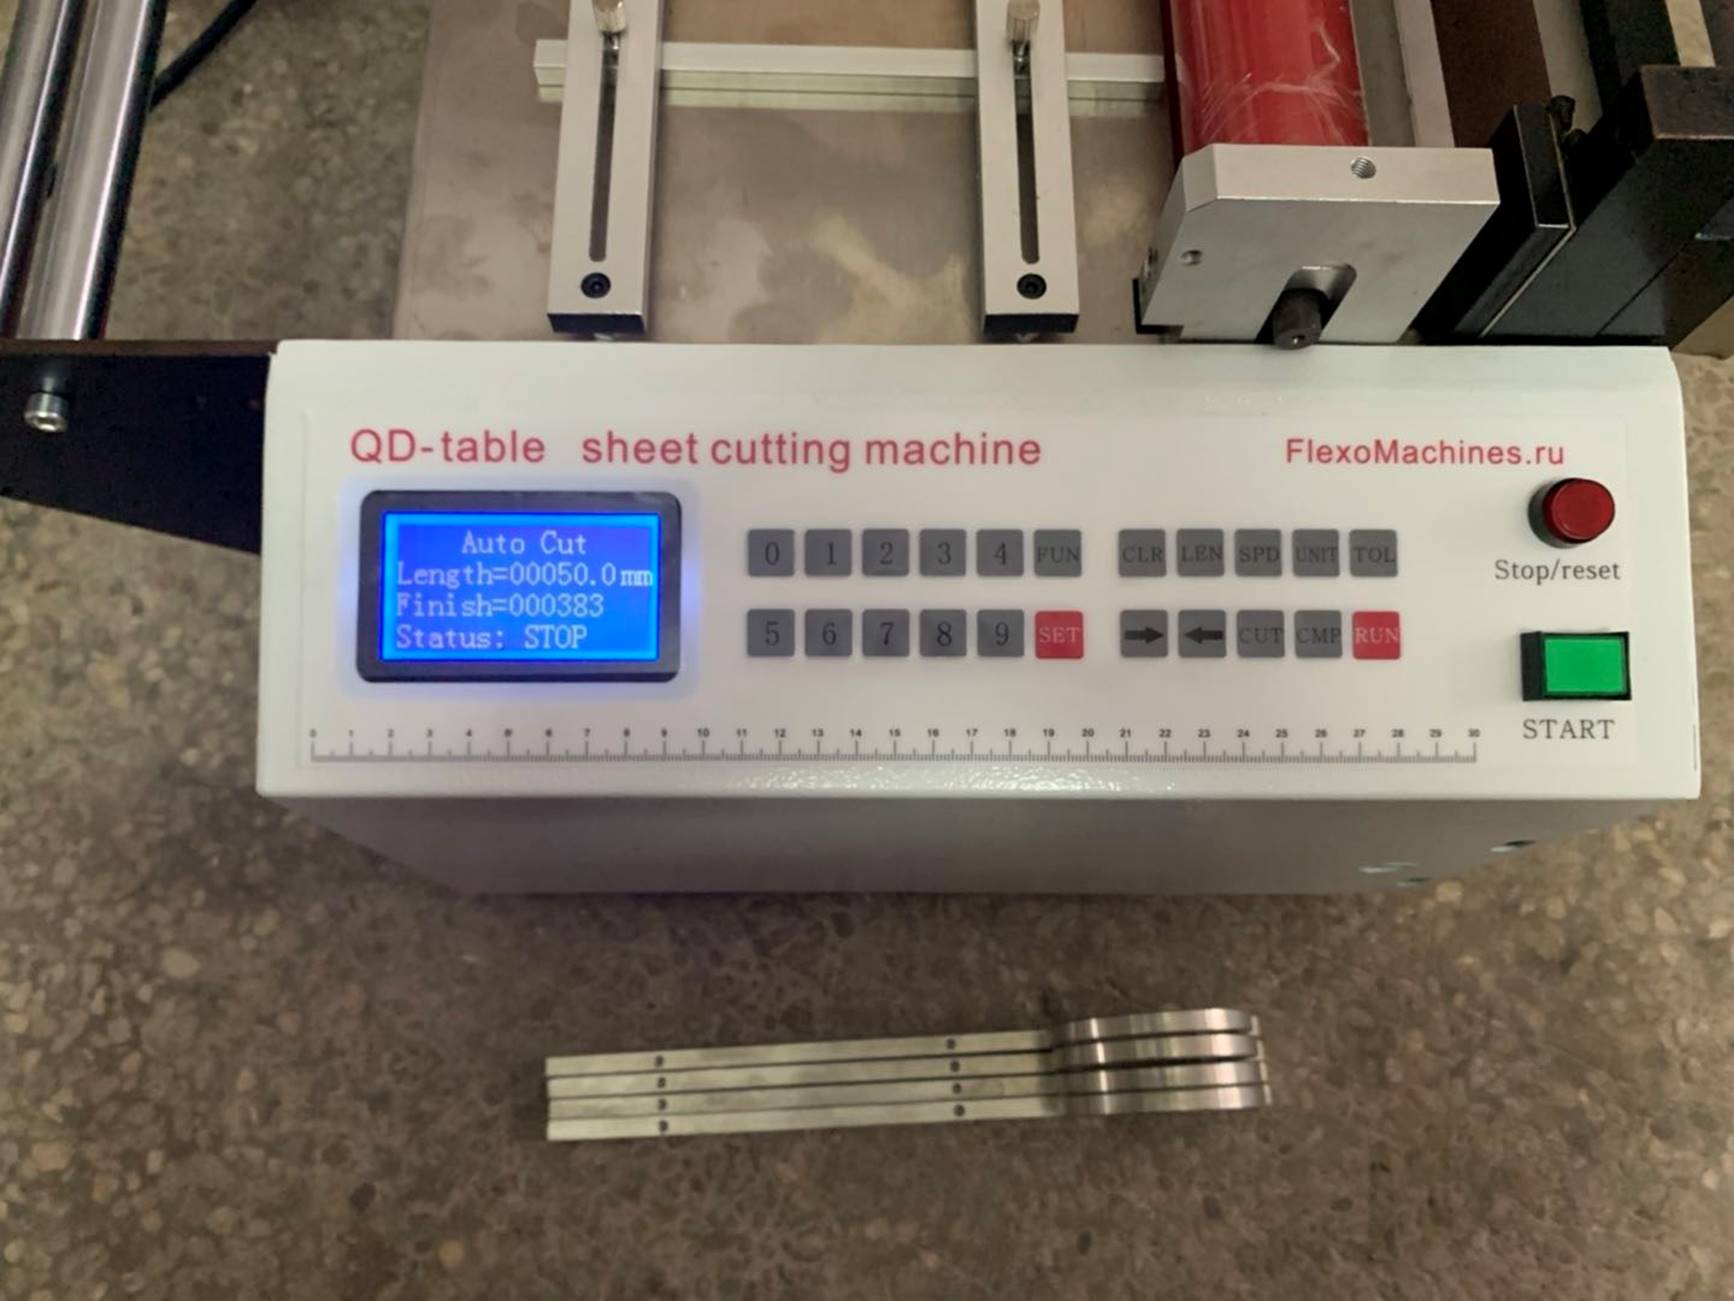 Листорезальная машина QD-400-table- подробные фотографии– 4-я машина из серии - листорезки - флаторезки в комплекте с отдельной стойкой размотки роля. Фотография 8.